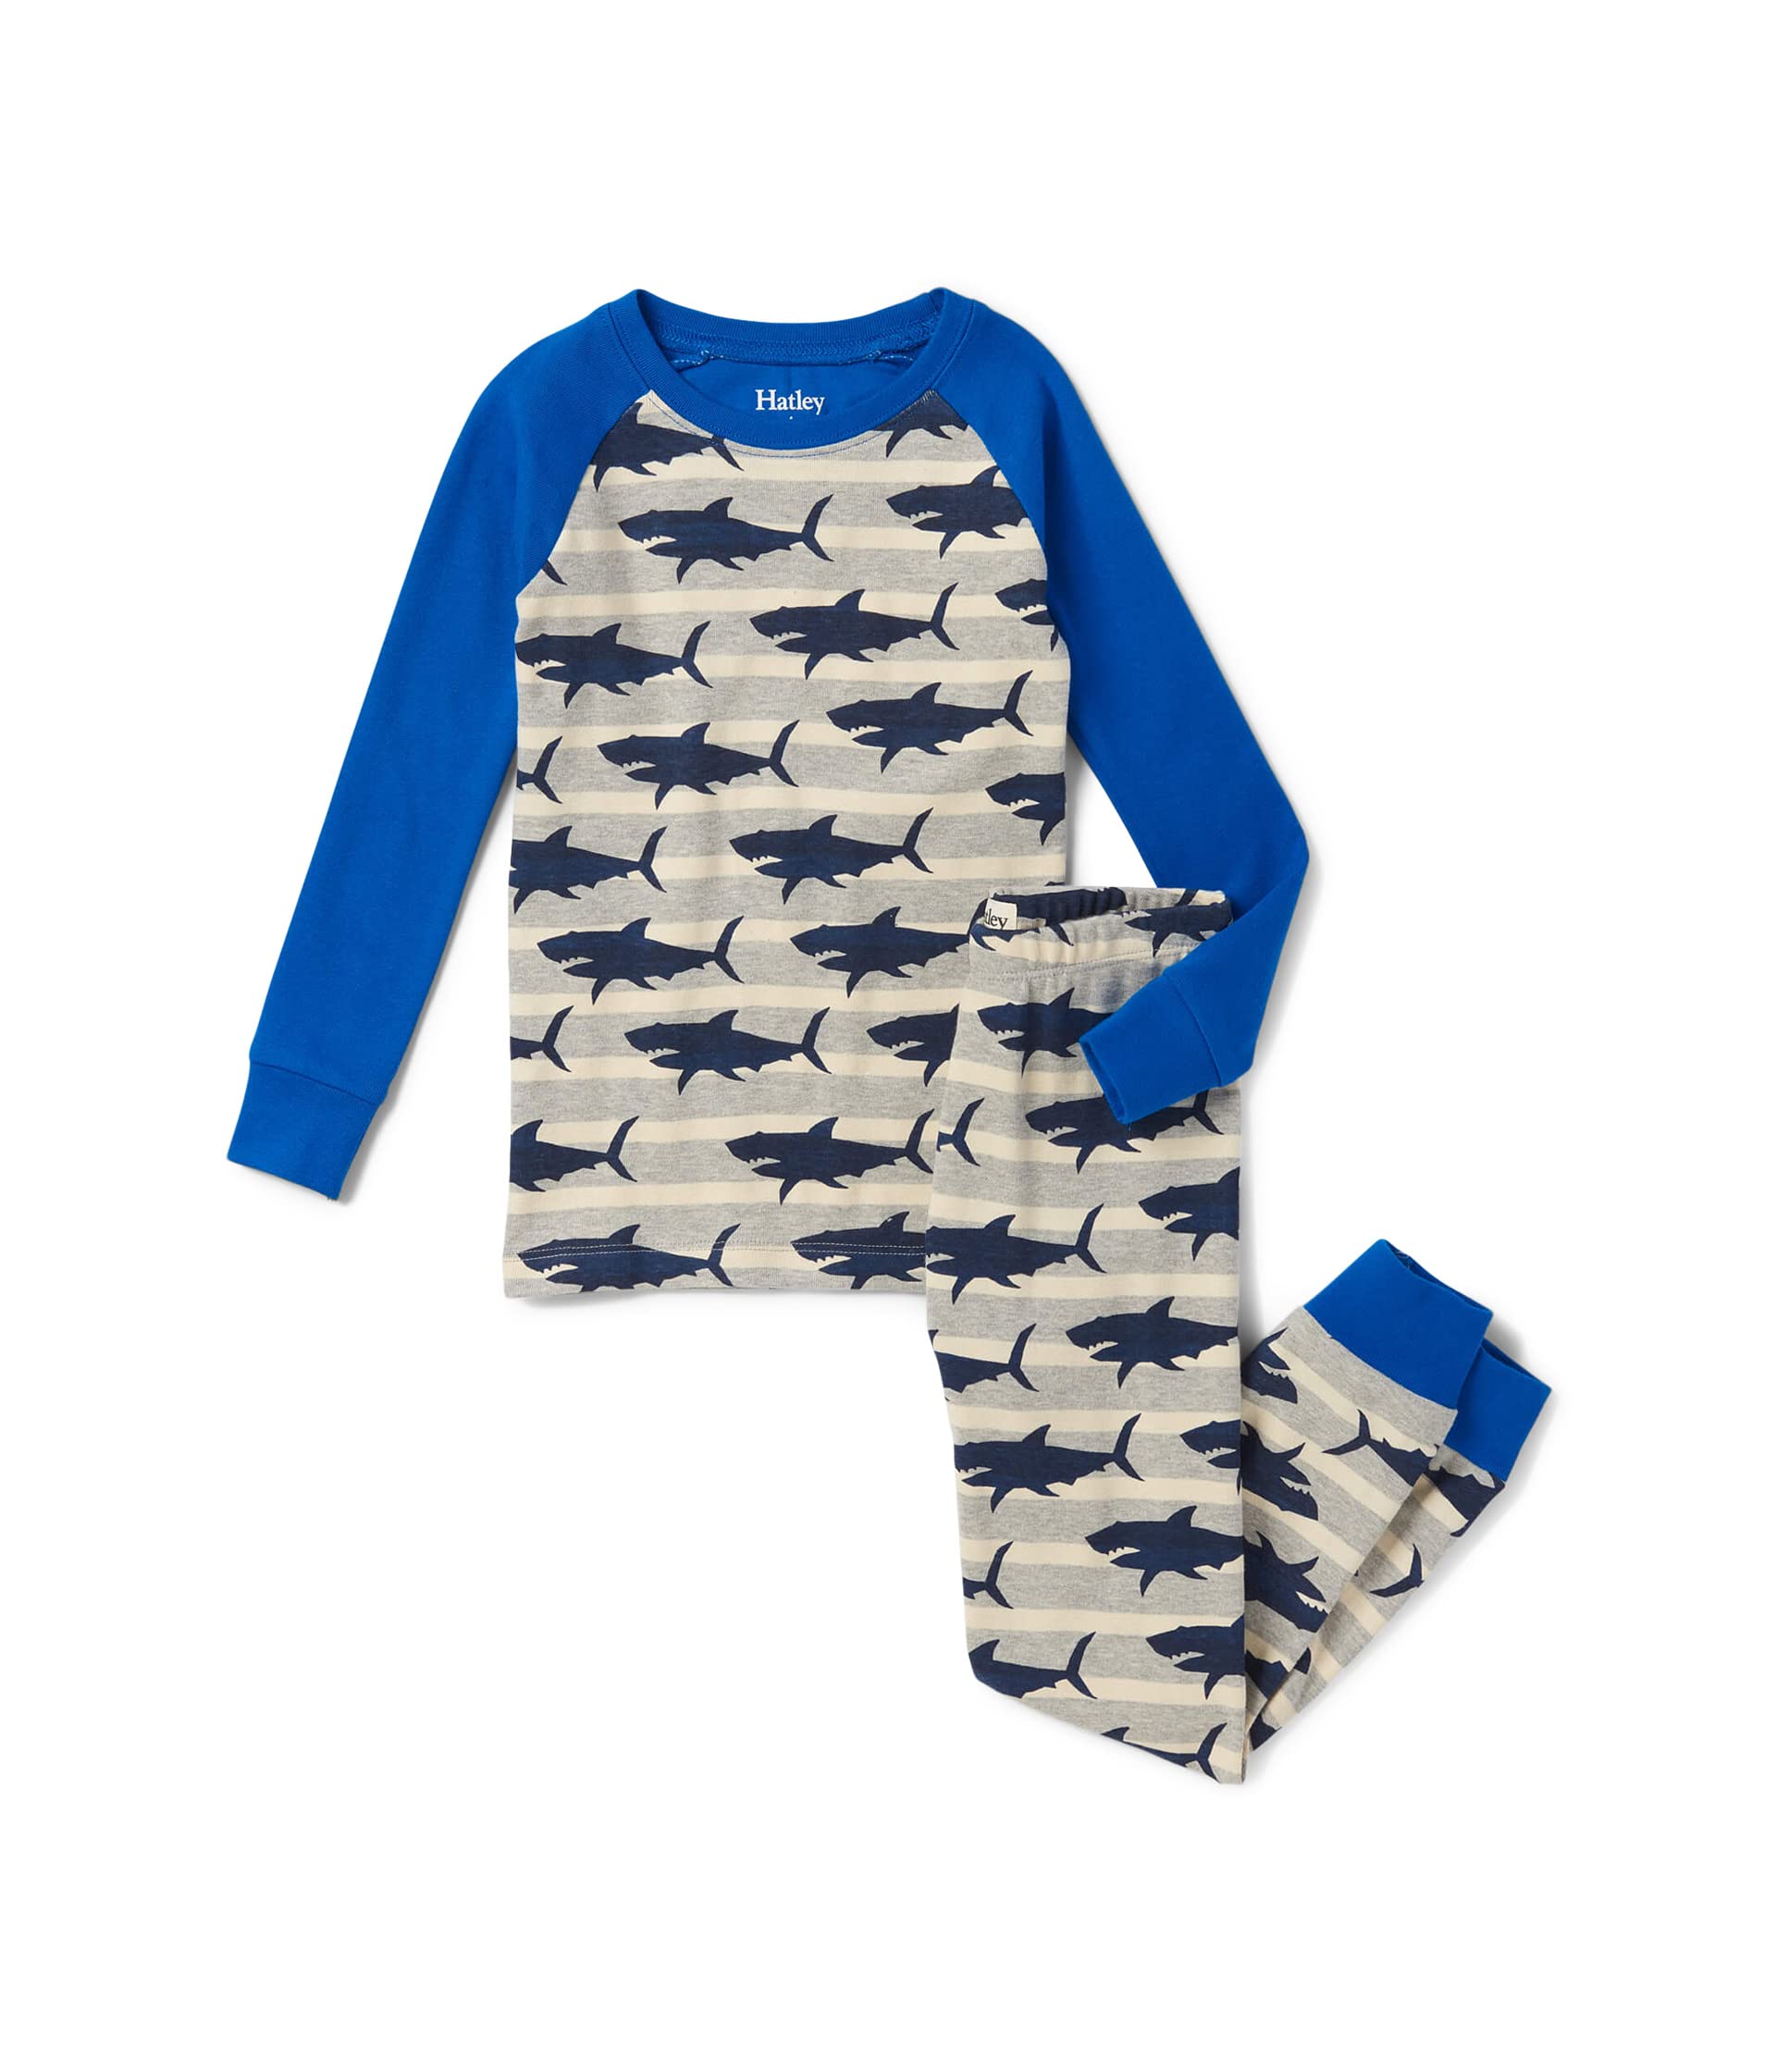 Пижамный комплект с регланами Hungry Sharks (для малышей/малышей/больших детей) Hatley